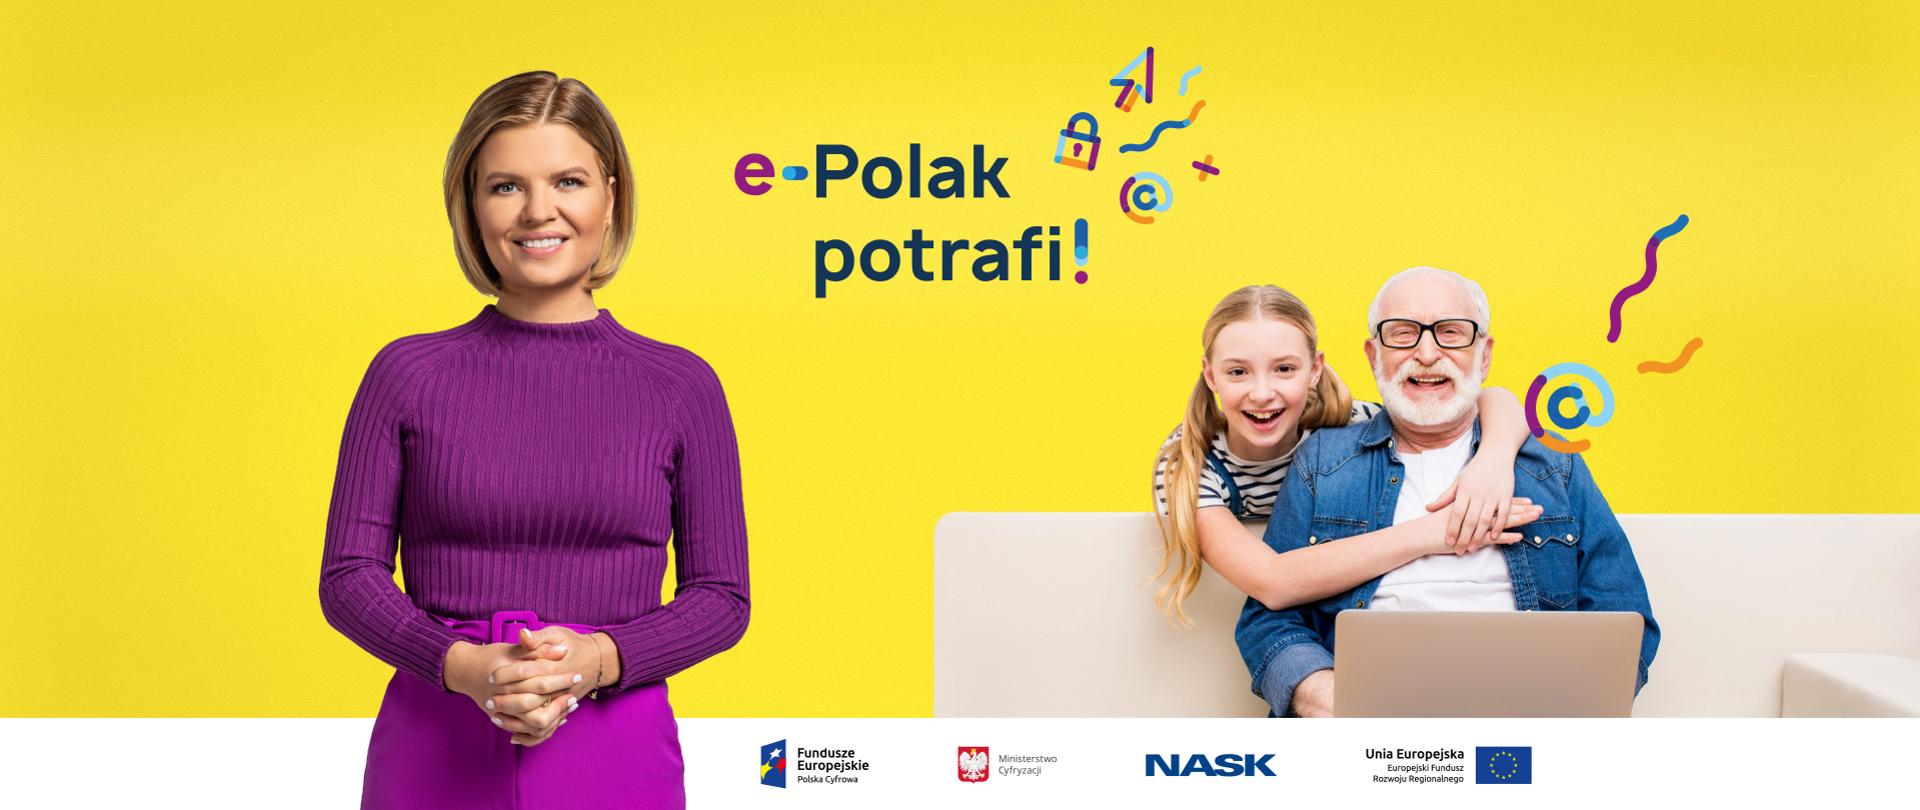 Z lewej strony - Marta Manowska, z prawej - uśmiechnięci dziadek z wnuczką przy laptopie, na środku - na żółtym tle - logo kampanii "e-Polak potrafi!"